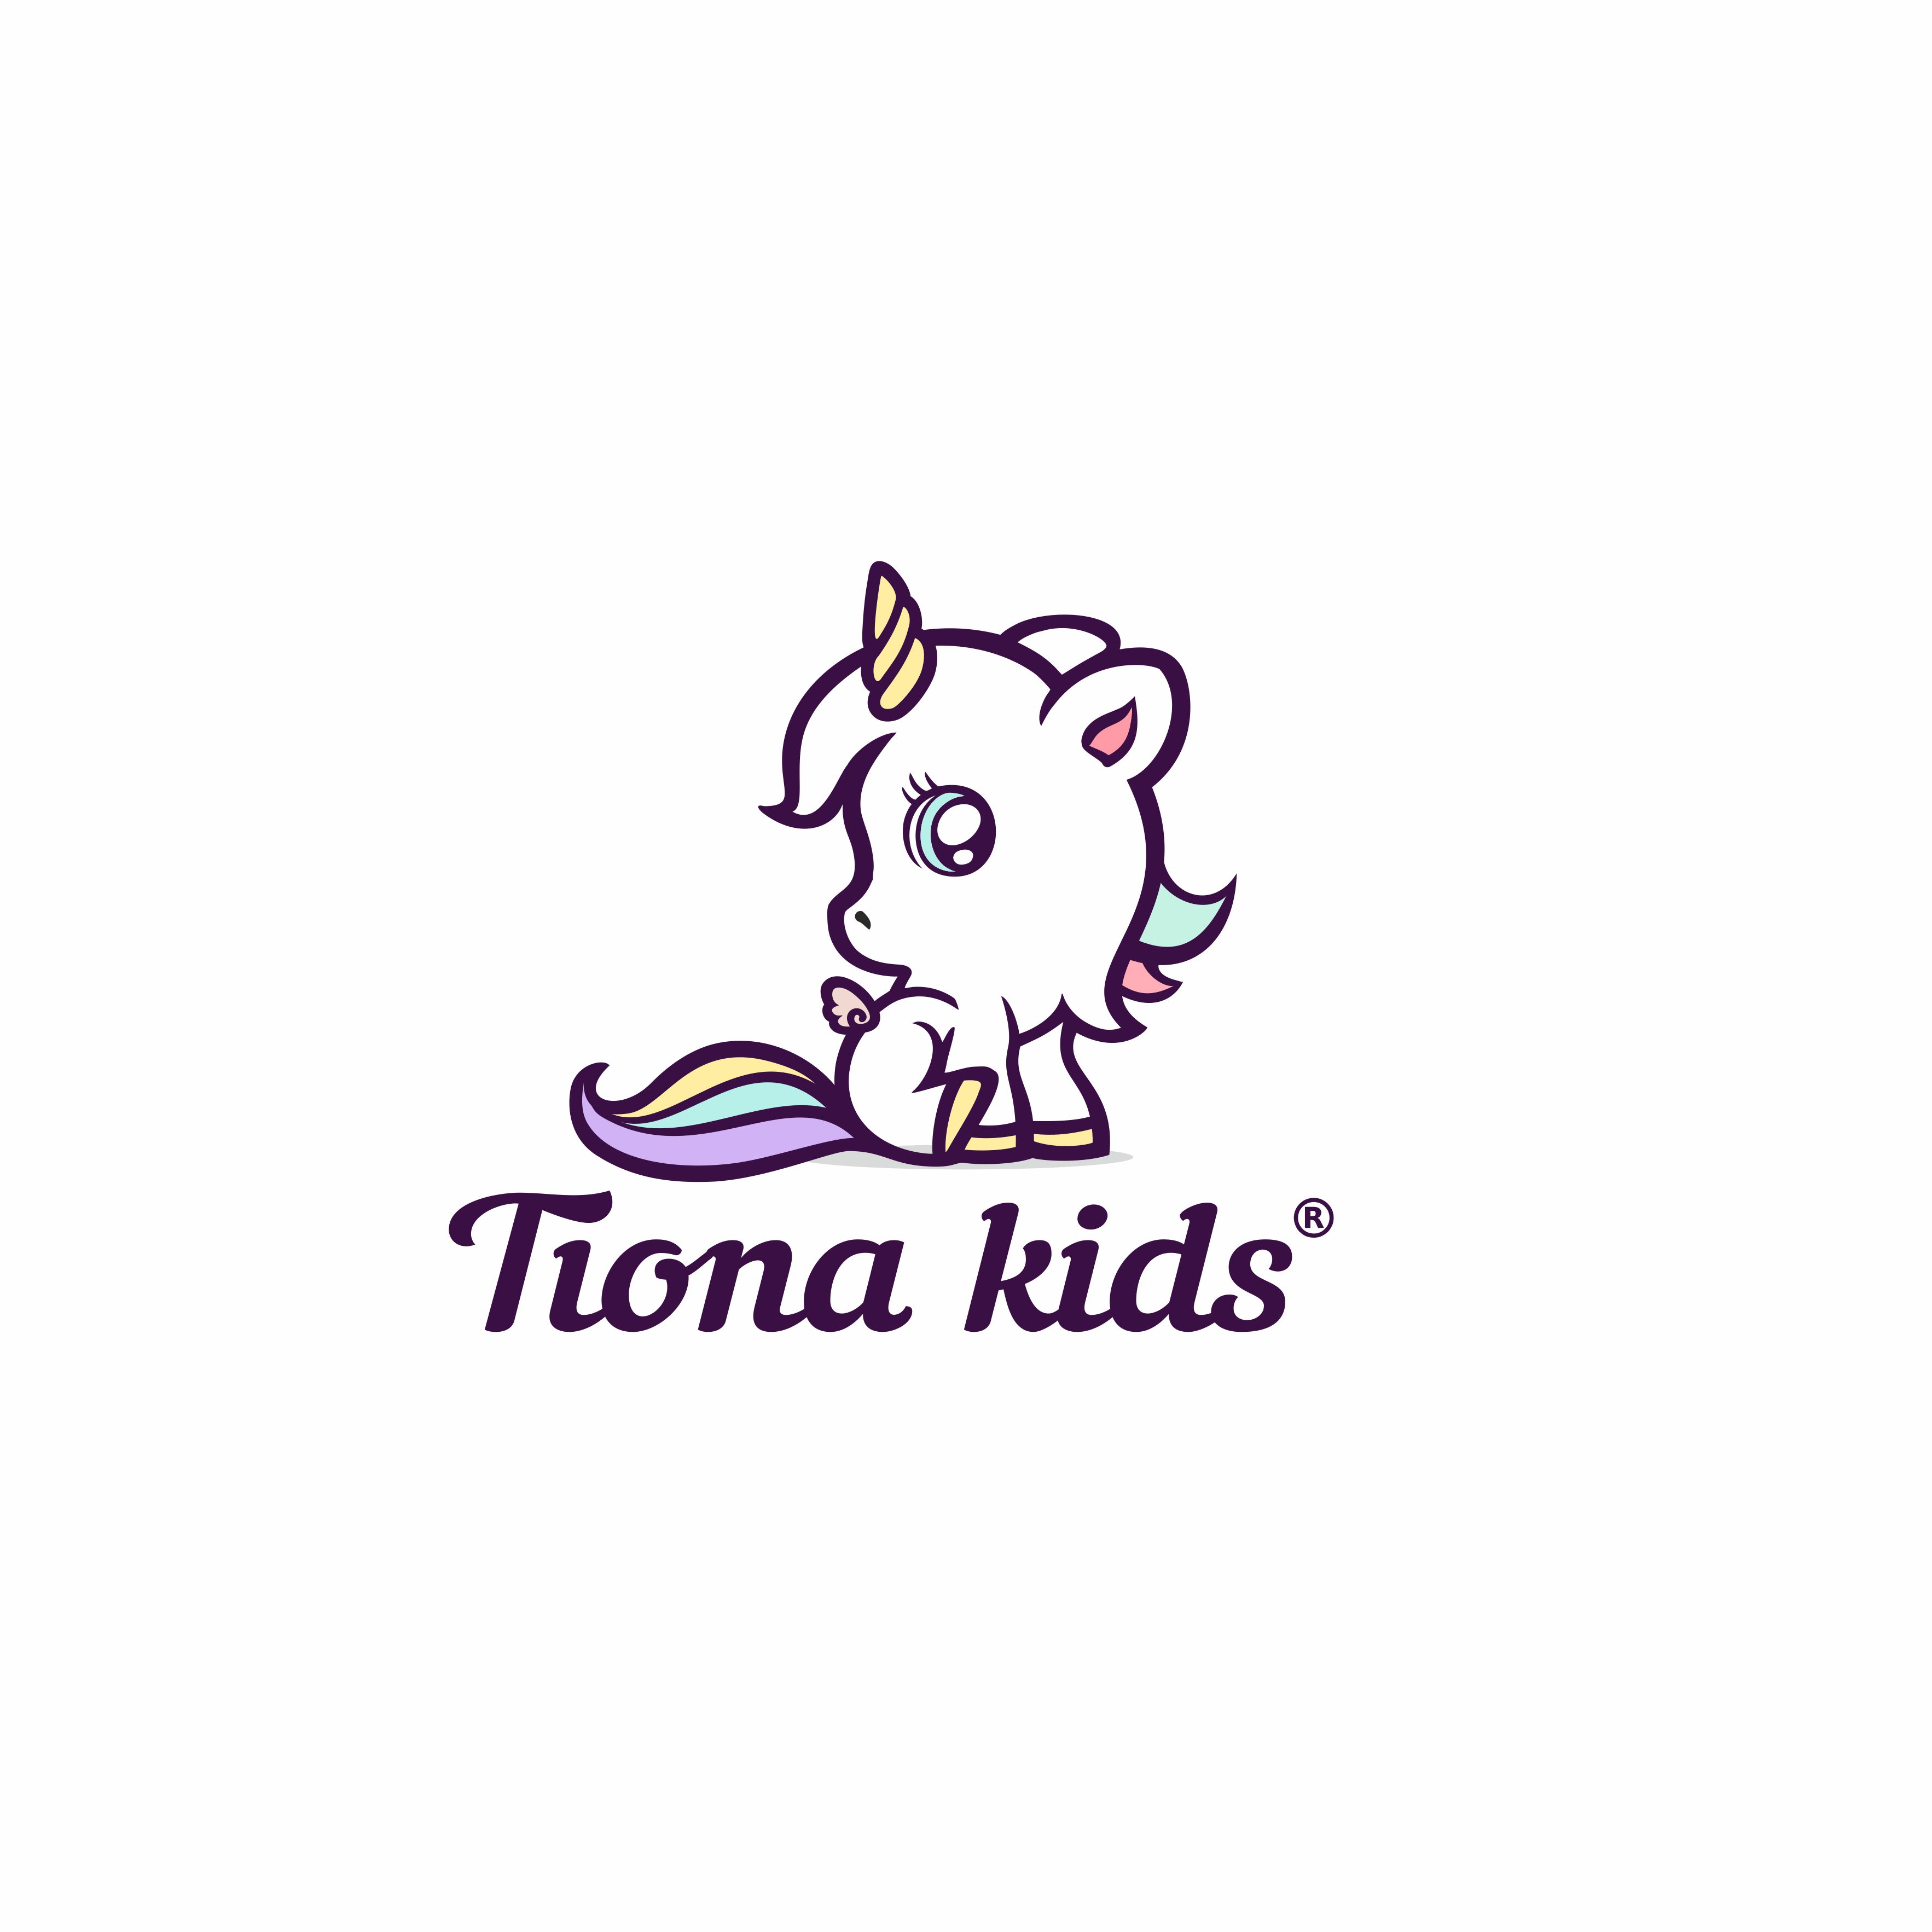 Tiona Kids